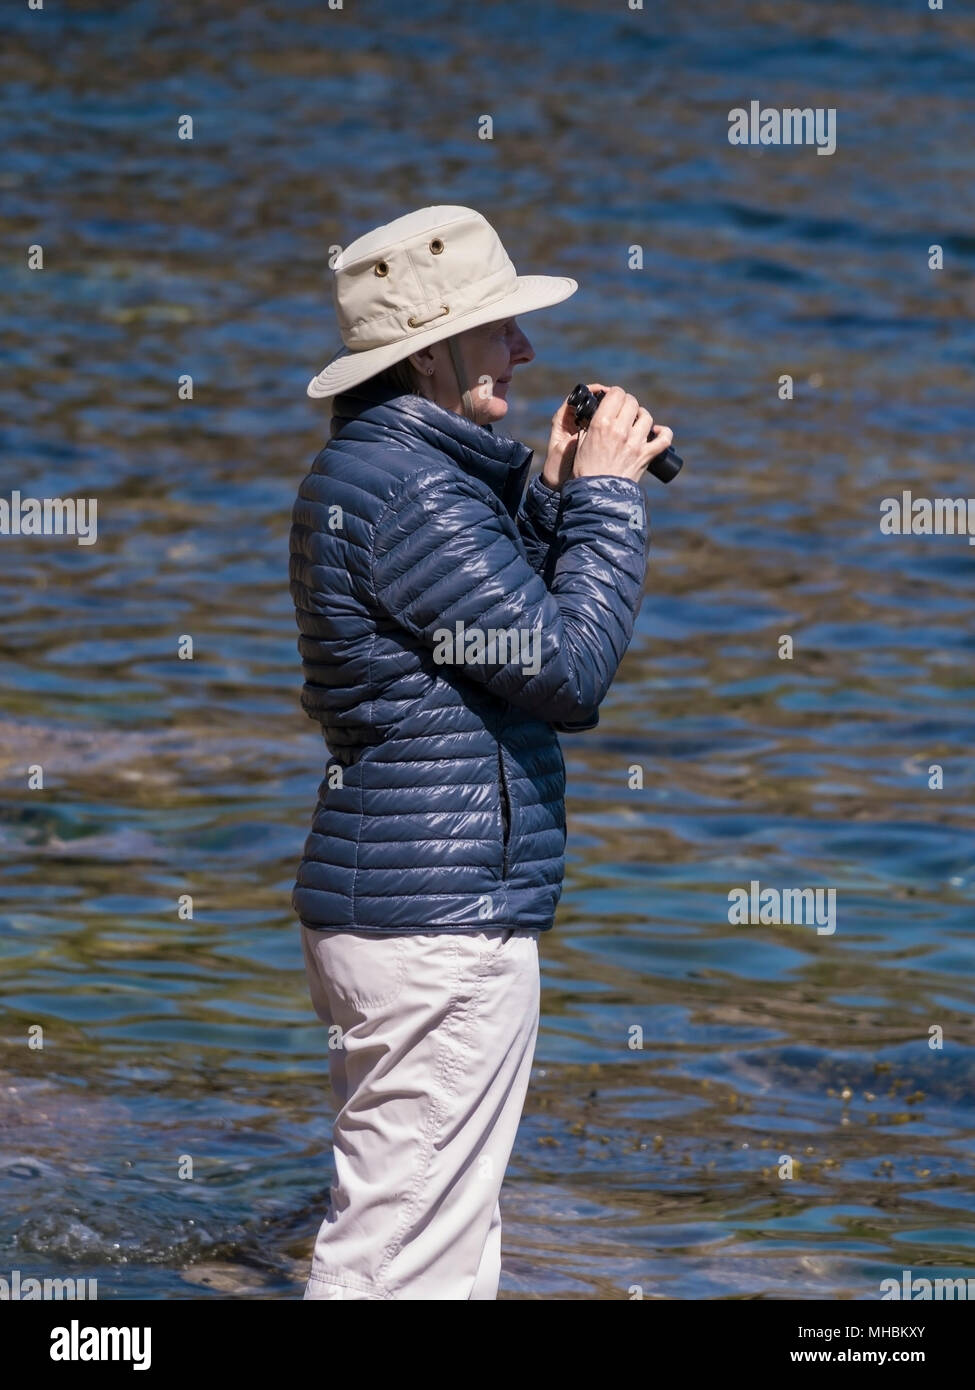 Frau Vogelbeobachter mit Fernglas auf der Suche nach Wildtieren während Tragen puffer Jacke und Sonnenhut stehend durch Wasser, UK. Stockfoto